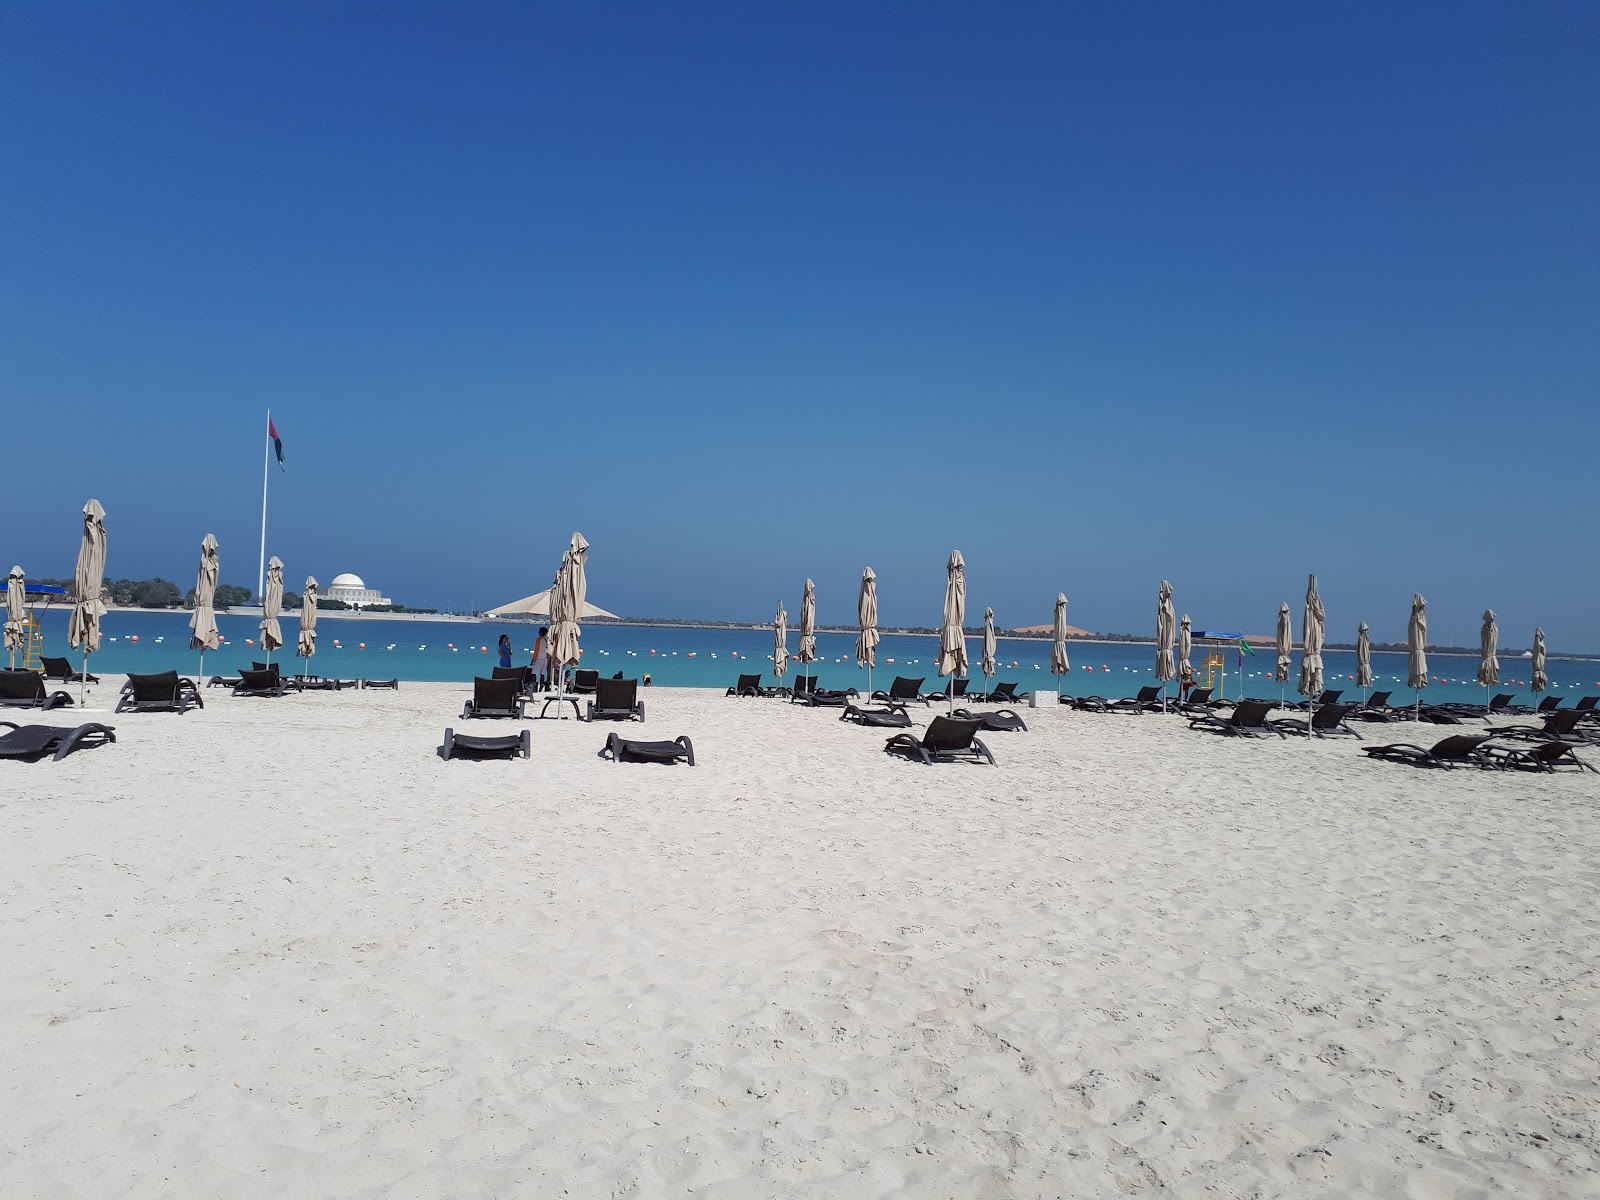 Corniche beach'in fotoğrafı çok temiz temizlik seviyesi ile